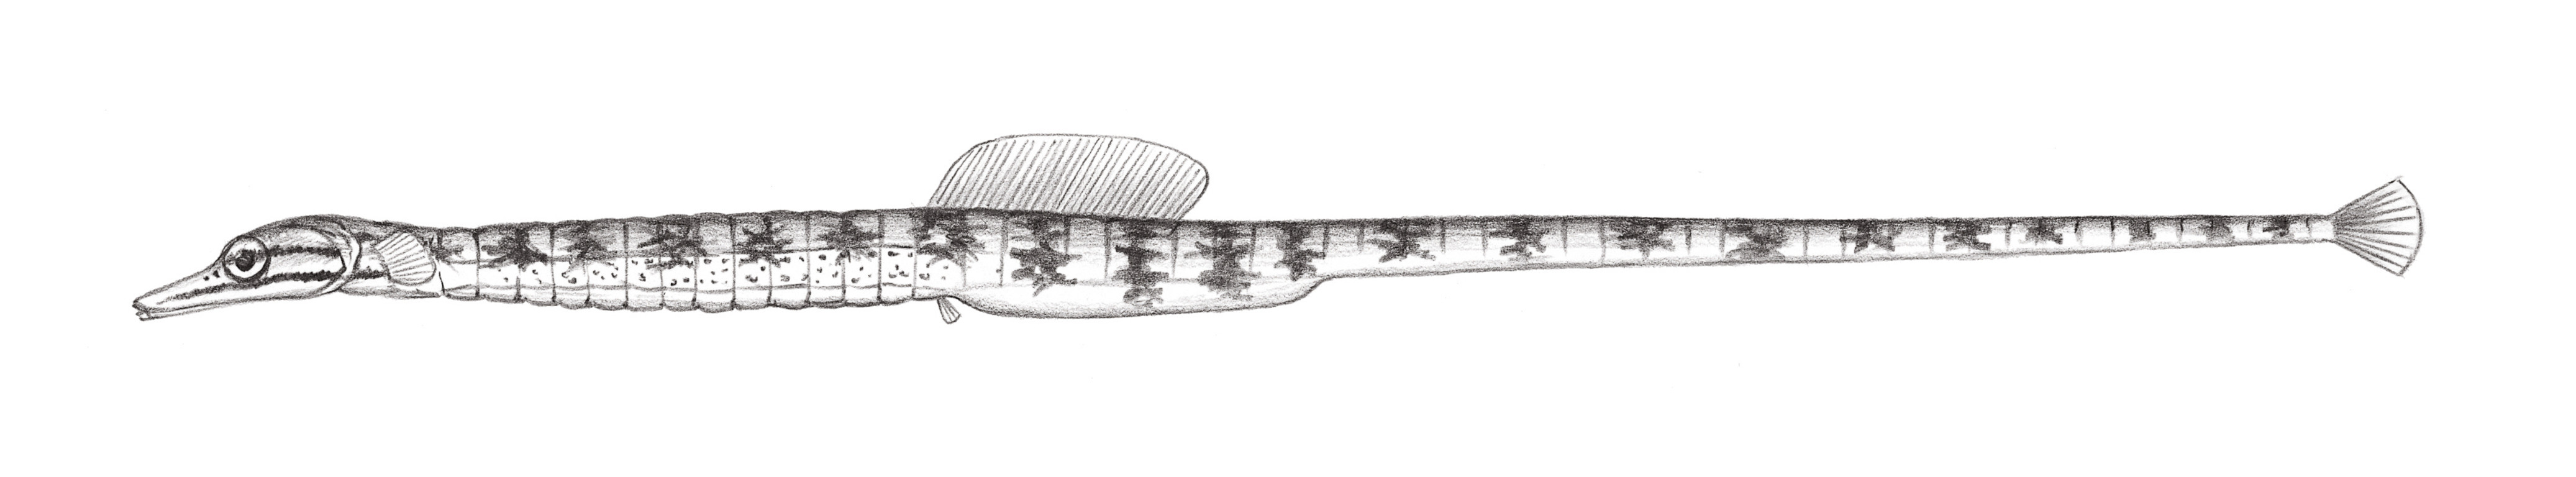 819.	黃帶冠海龍 Corythoichthys flavofasciatus (Rüppell, 1838)